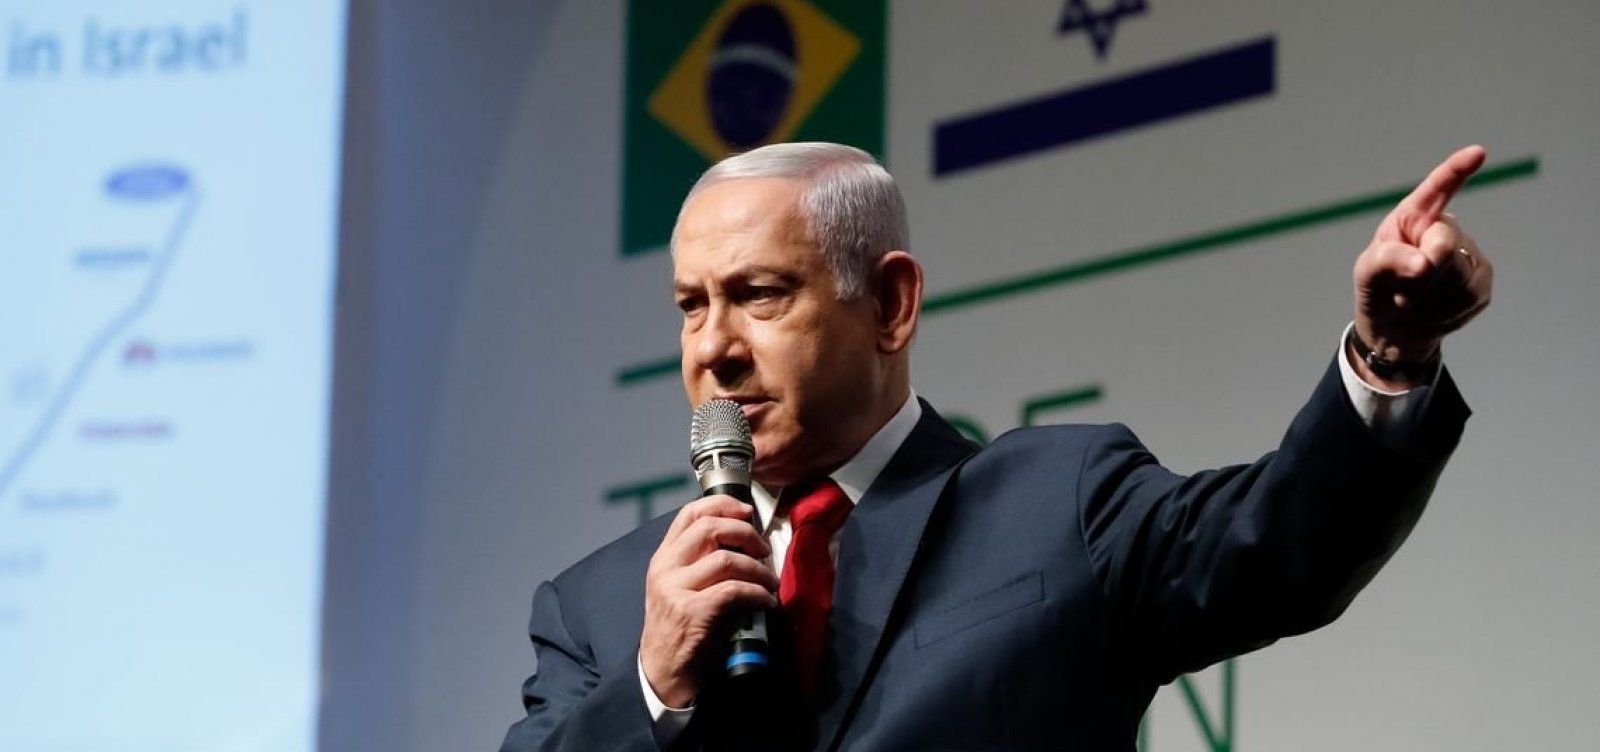 Após três tentativas, Netanyahu não consegue formar novo governo em Israel